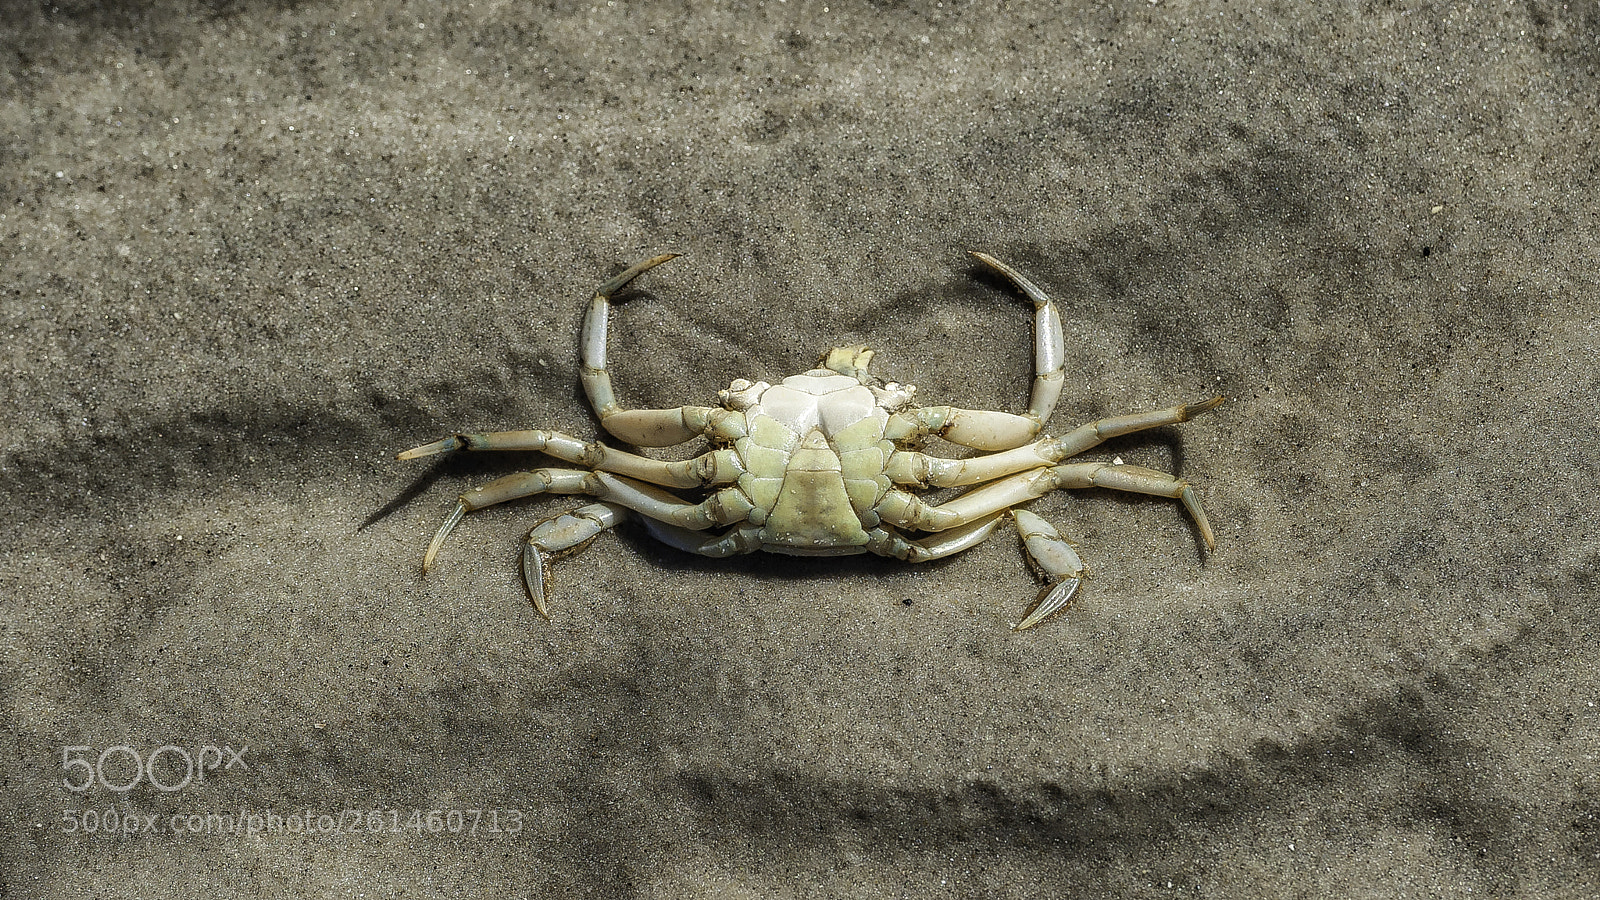 Nikon D700 sample photo. "shell on the beach" photography